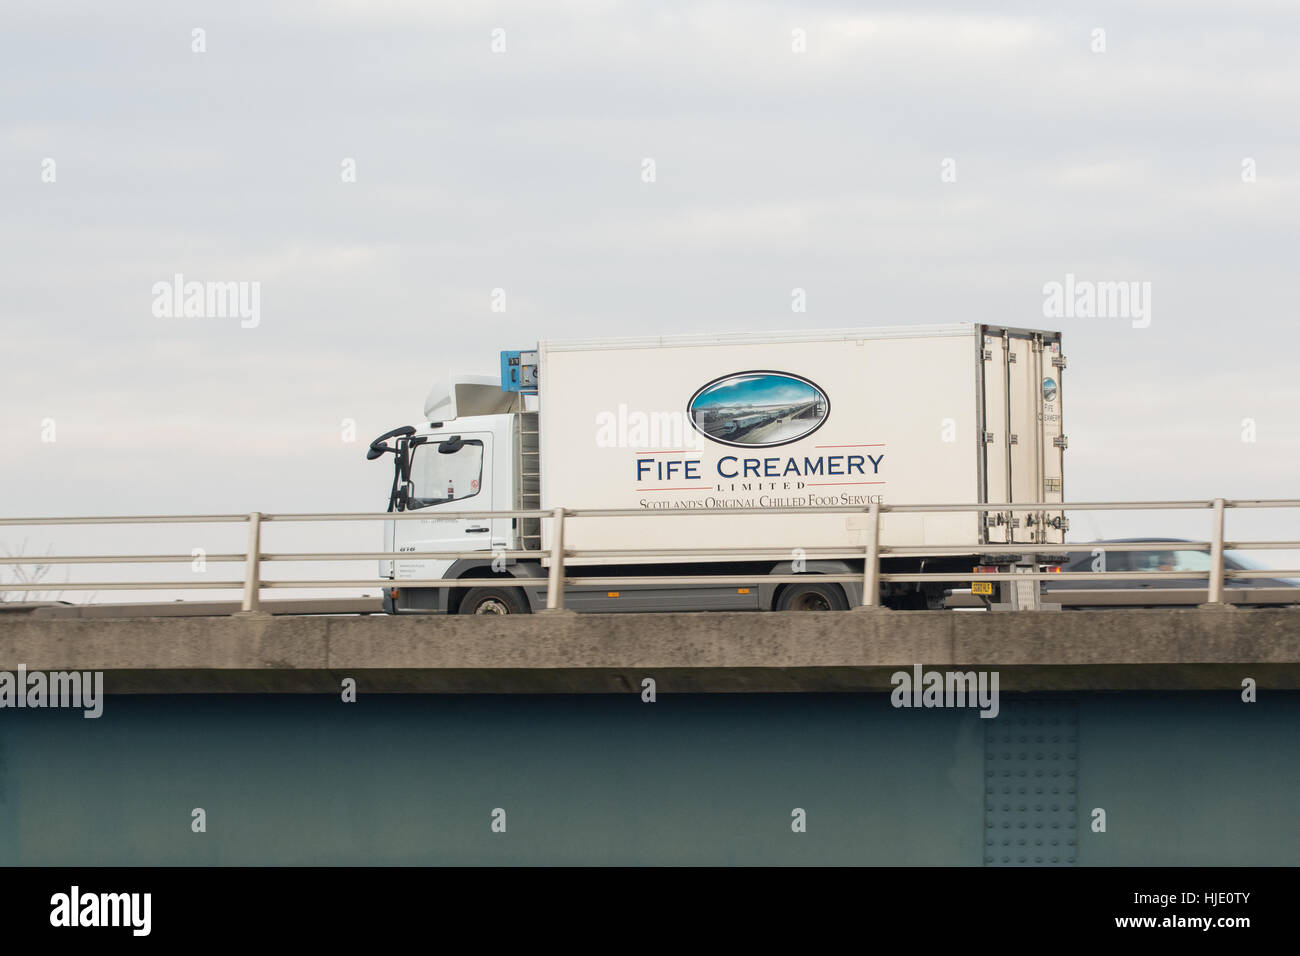 Camion de livraison Creamery Fife - Écosse, Royaume-Uni Banque D'Images